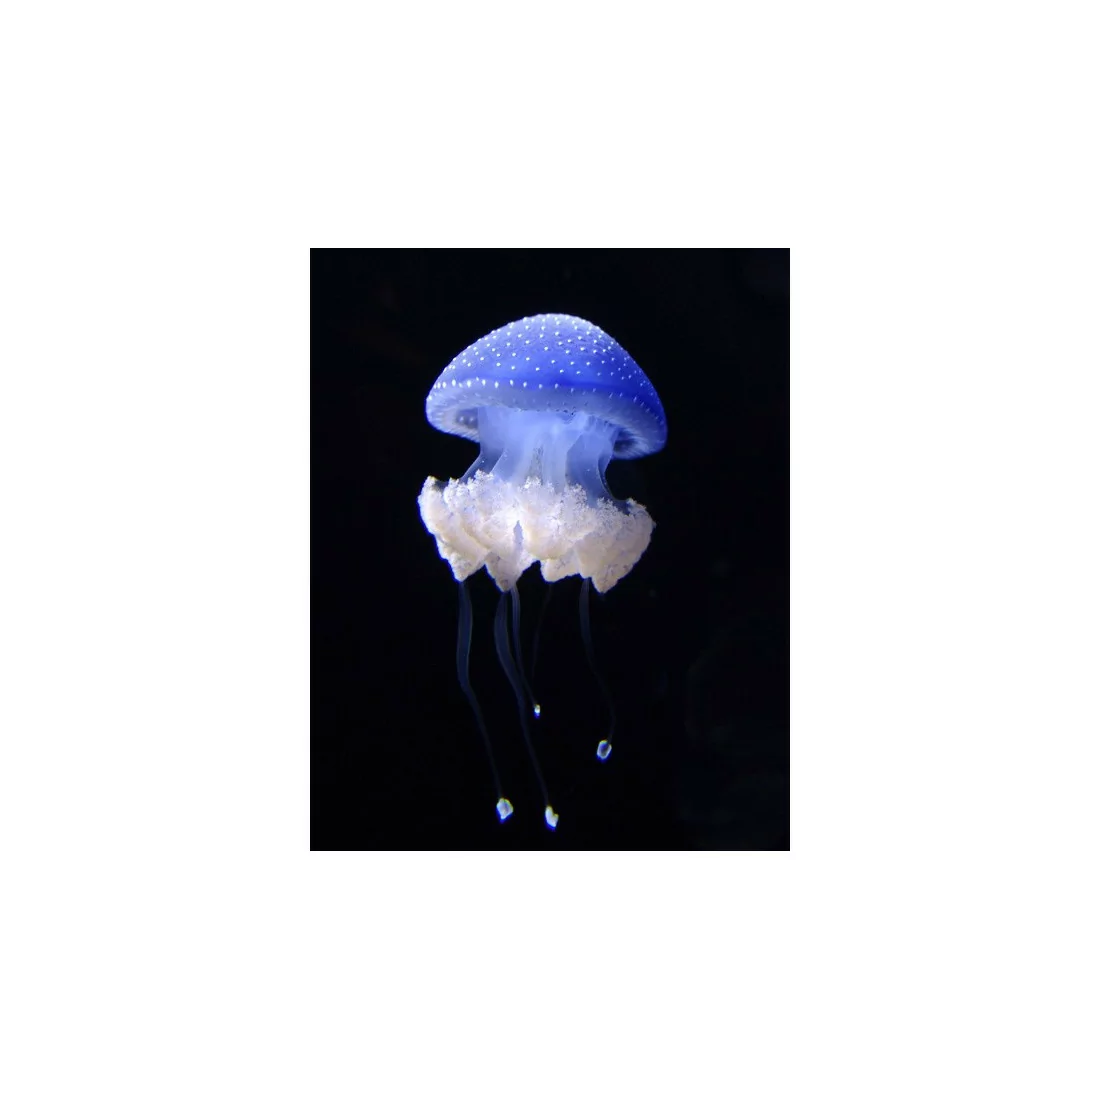 Phyllorhiza punctata jellyfish